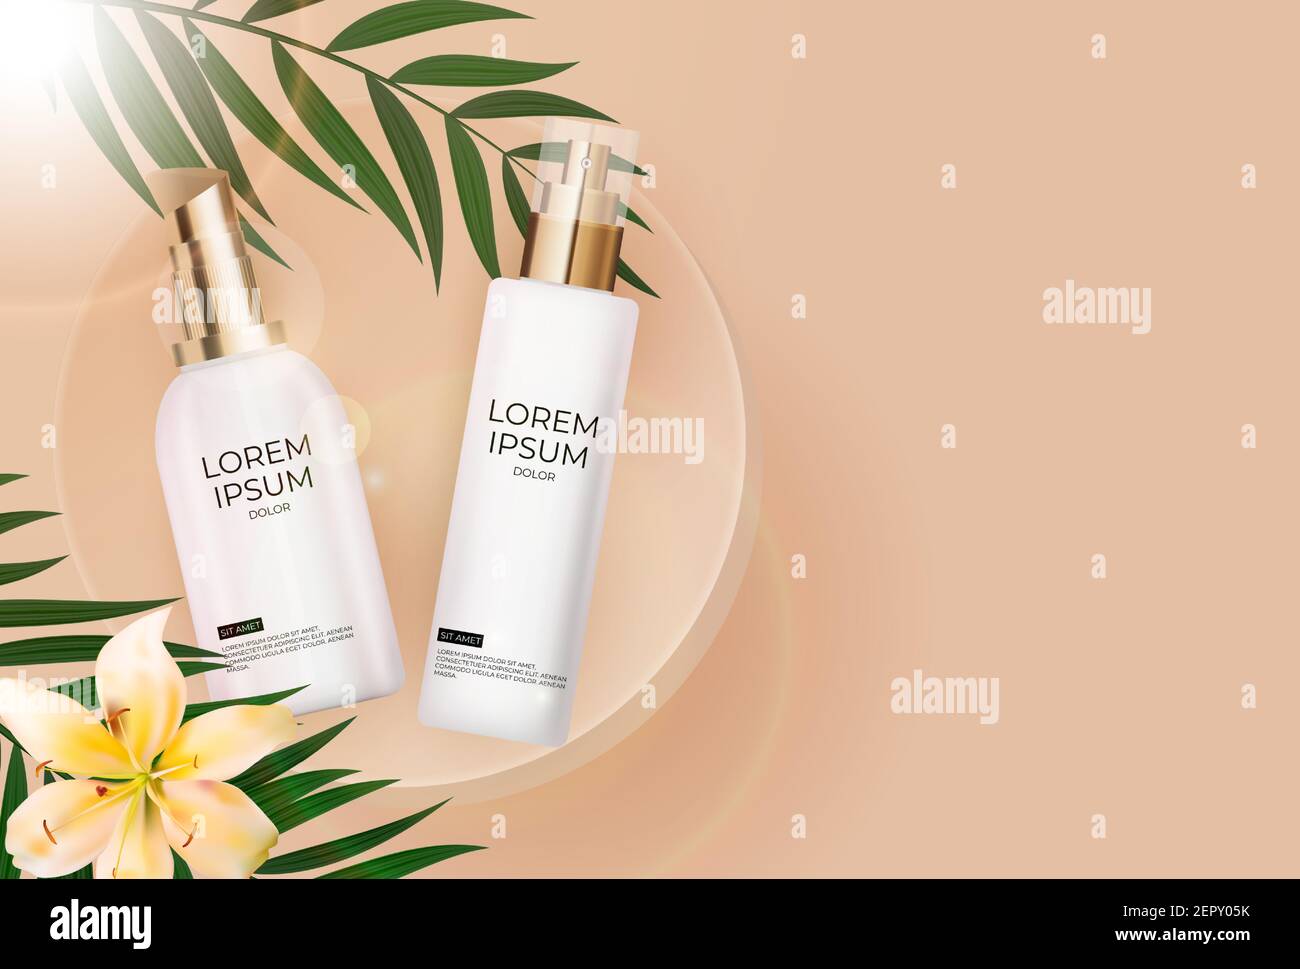 3D Realistic Sun protection bouteille de crème sur fond beige avec feuilles de palmier, fleur de lilly et podium. Modèle de conception des produits cosmétiques de mode. Illustration de Vecteur